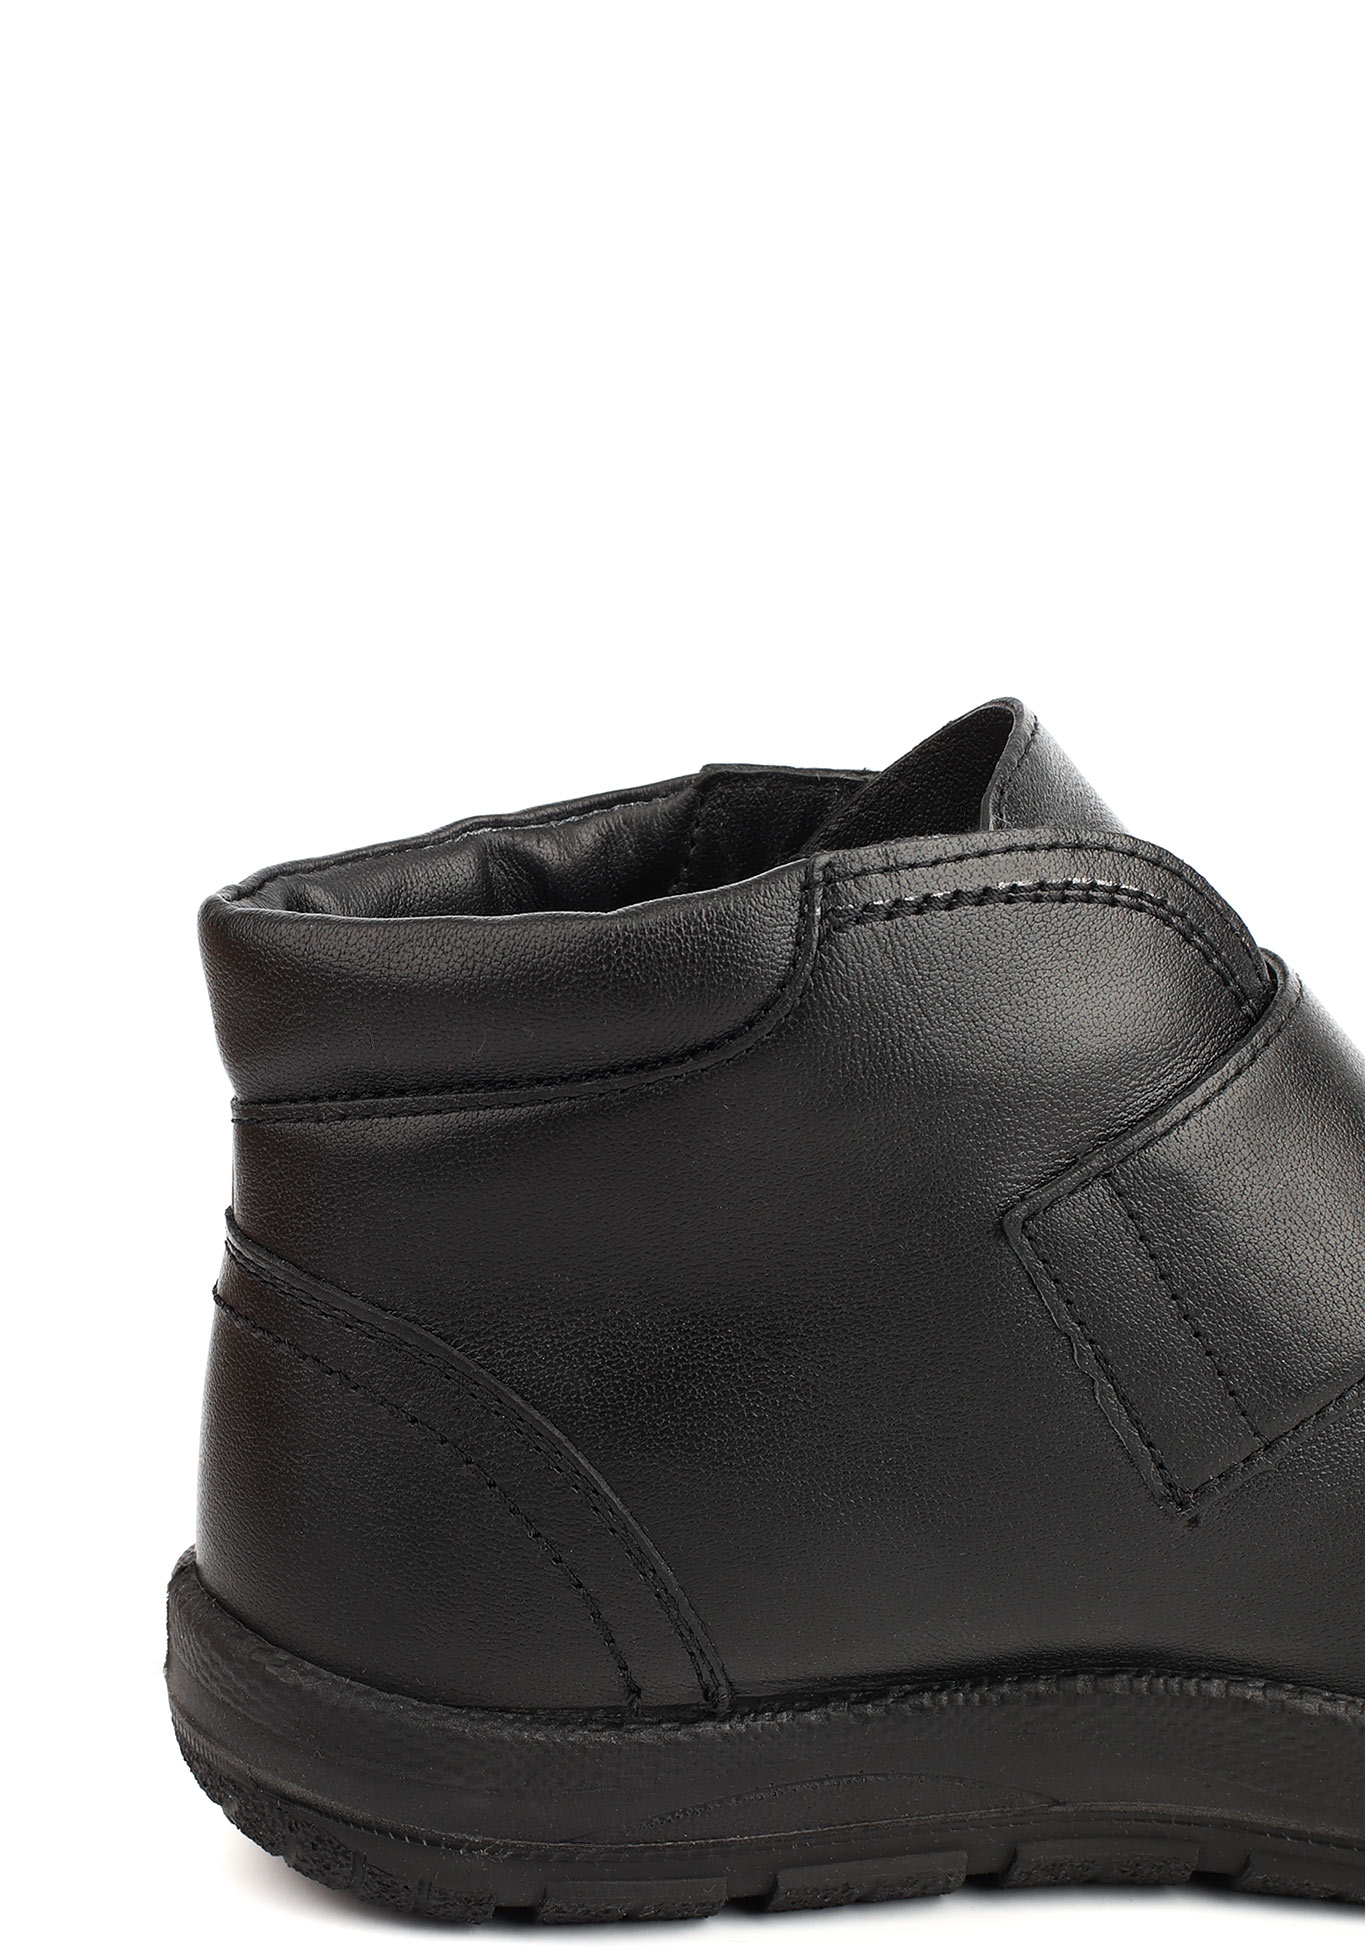 Ботинки женские "Лучия" Germanika, размер 37, цвет черный - фото 10